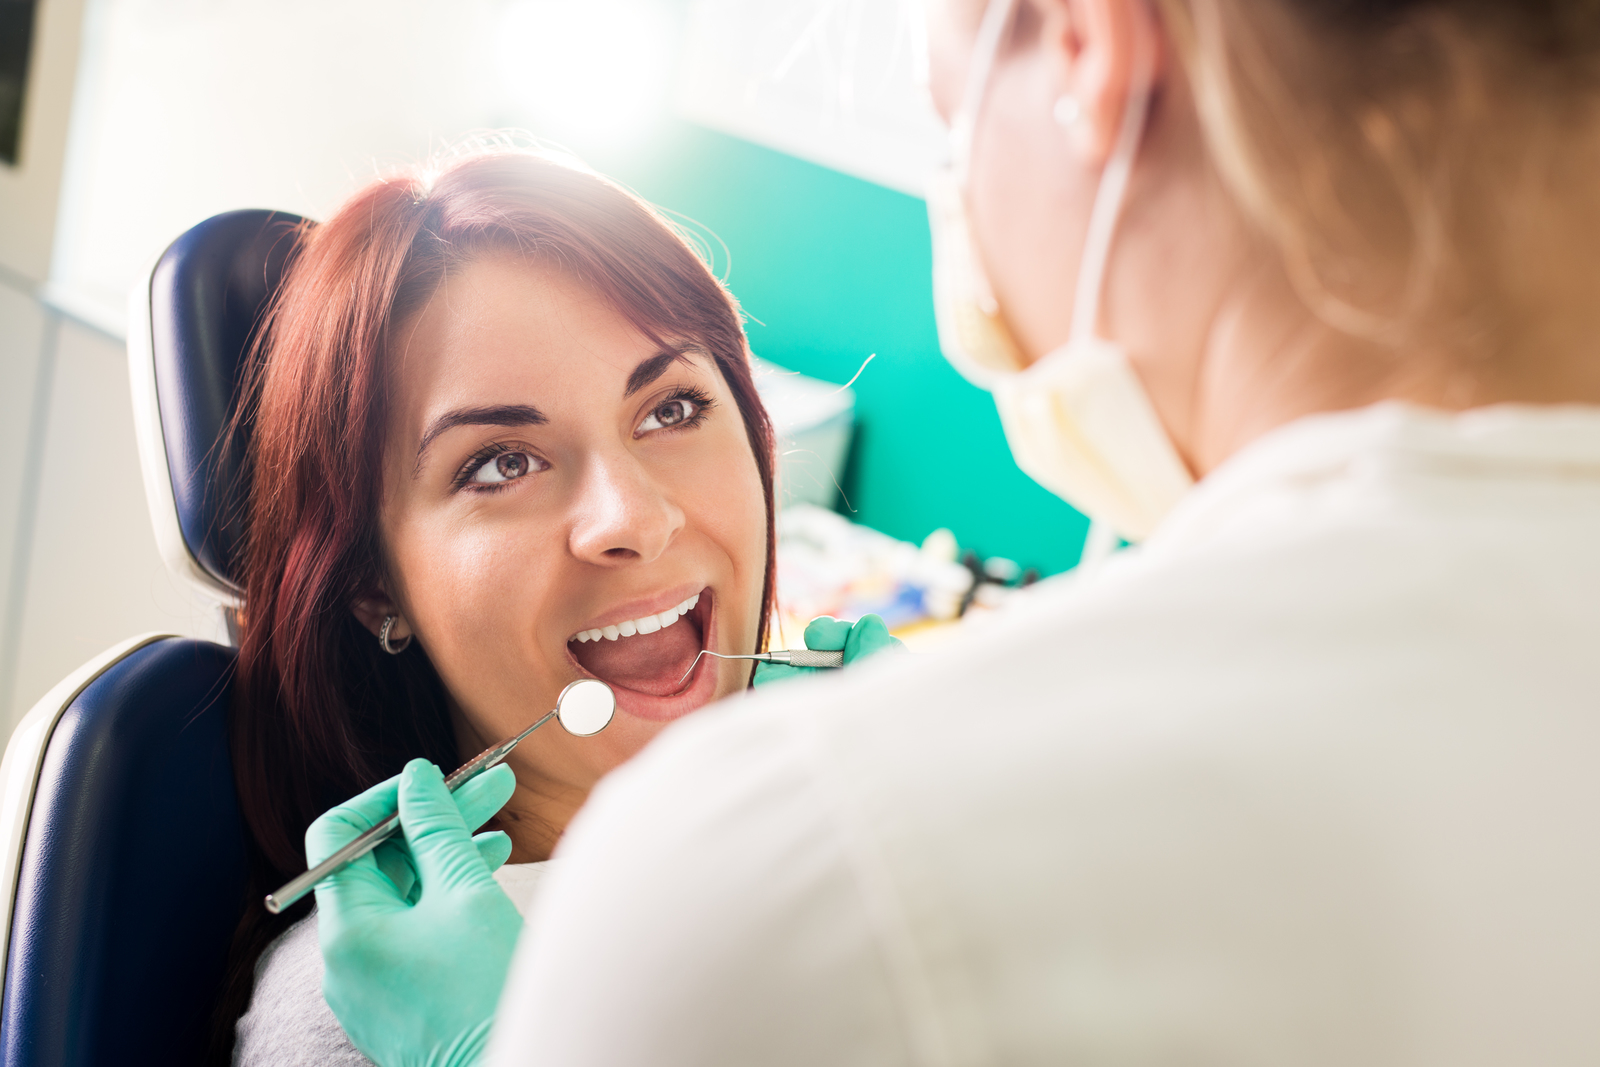 Co to jest bonding zębów? Definicja, zastosowanie, zalety i wady